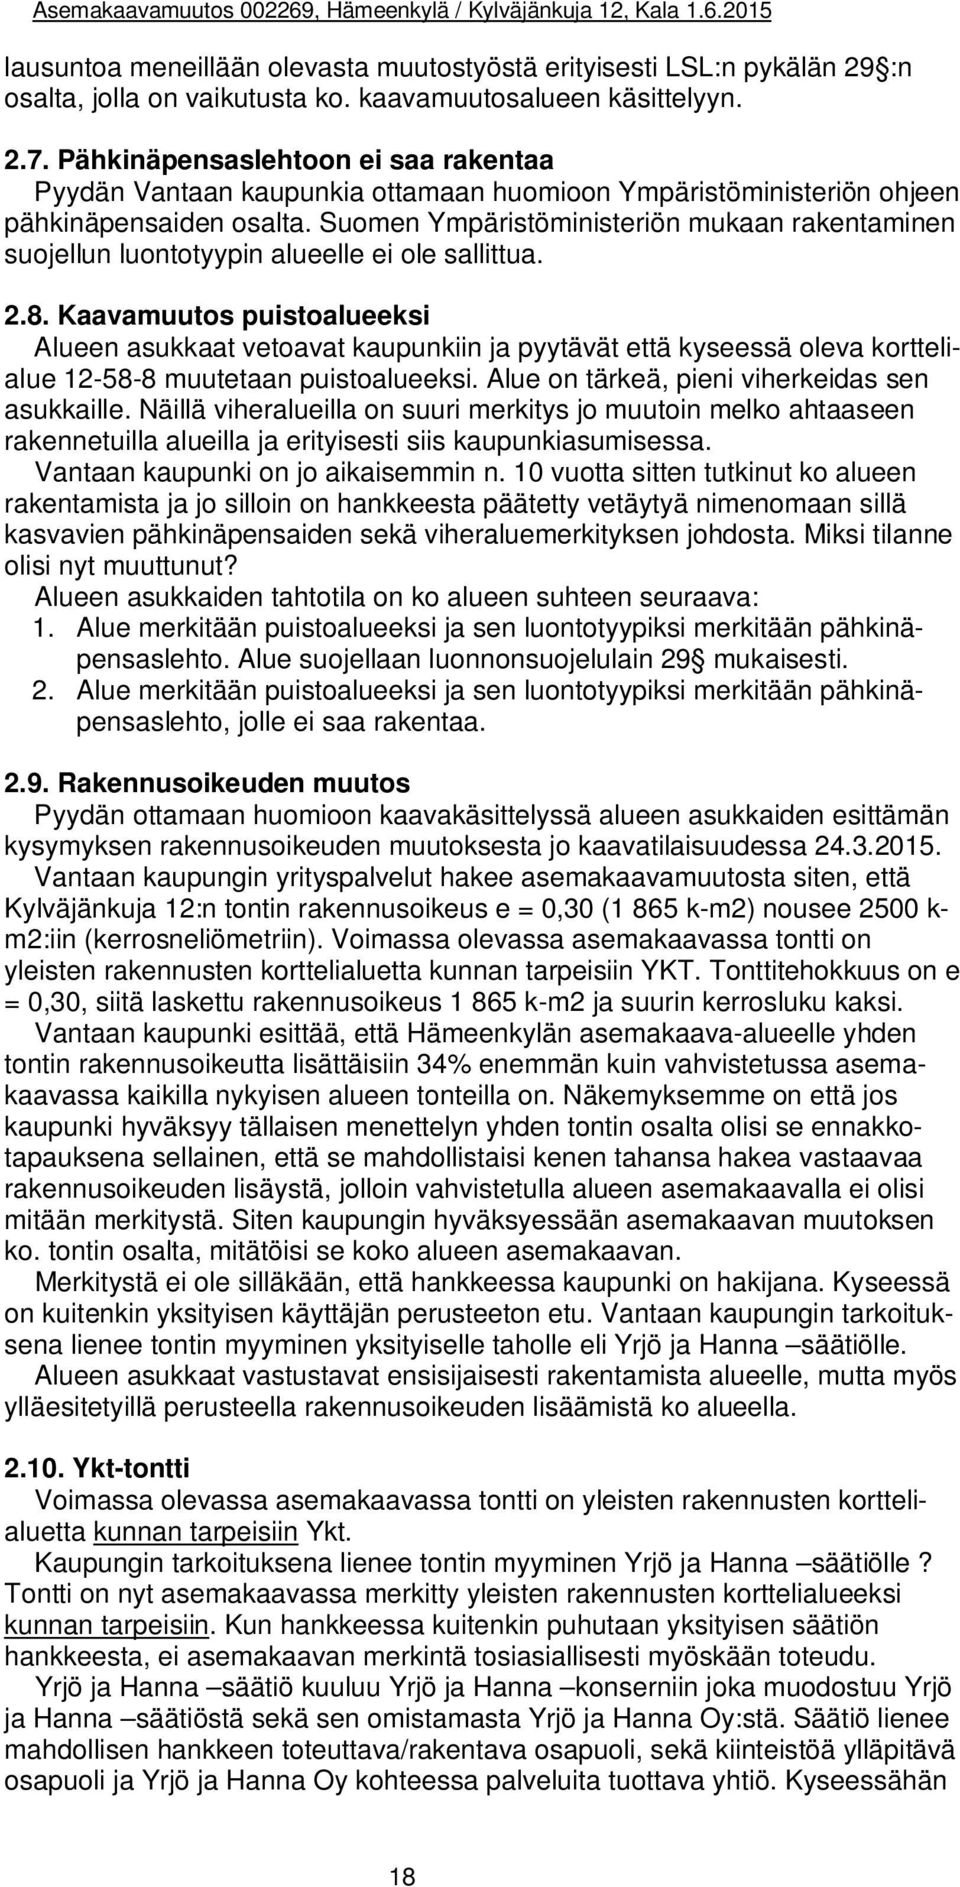 Suomen Ympäristöministeriön mukaan rakentaminen suojellun luontotyypin alueelle ei ole sallittua. 2.8.